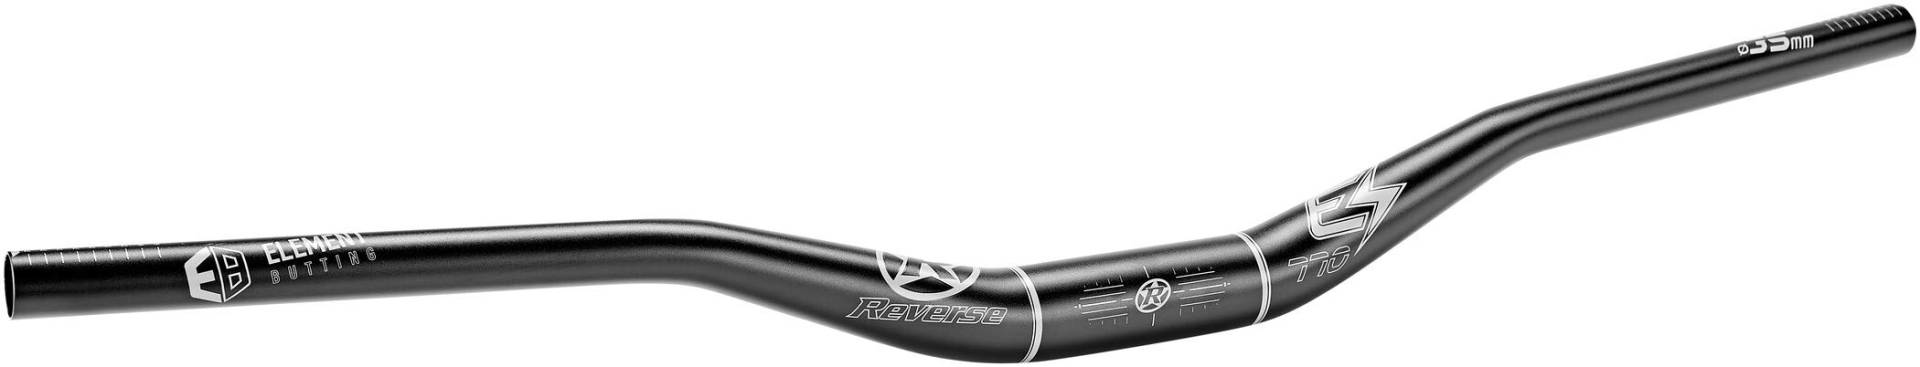 Reverse E-Element Ergo Fahrrad Lenker 35.0mm 770mm schwarz/grau: Größe: 35.0mm 25mm Rise von Reverse